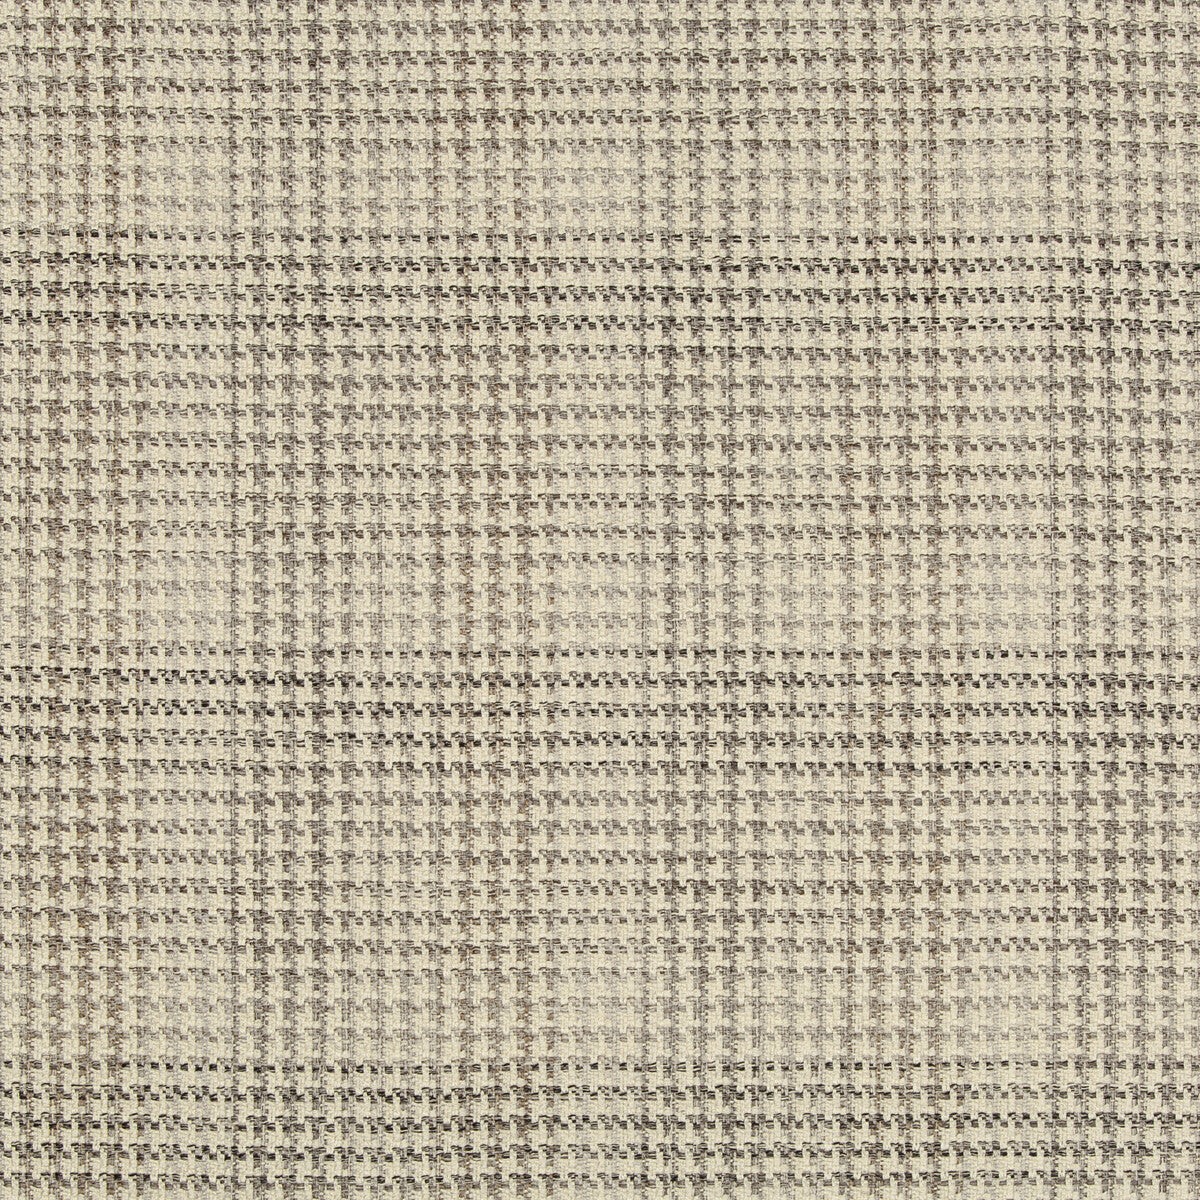 Kravet Design fabric in 35593-21 color - pattern 35593.21.0 - by Kravet Design